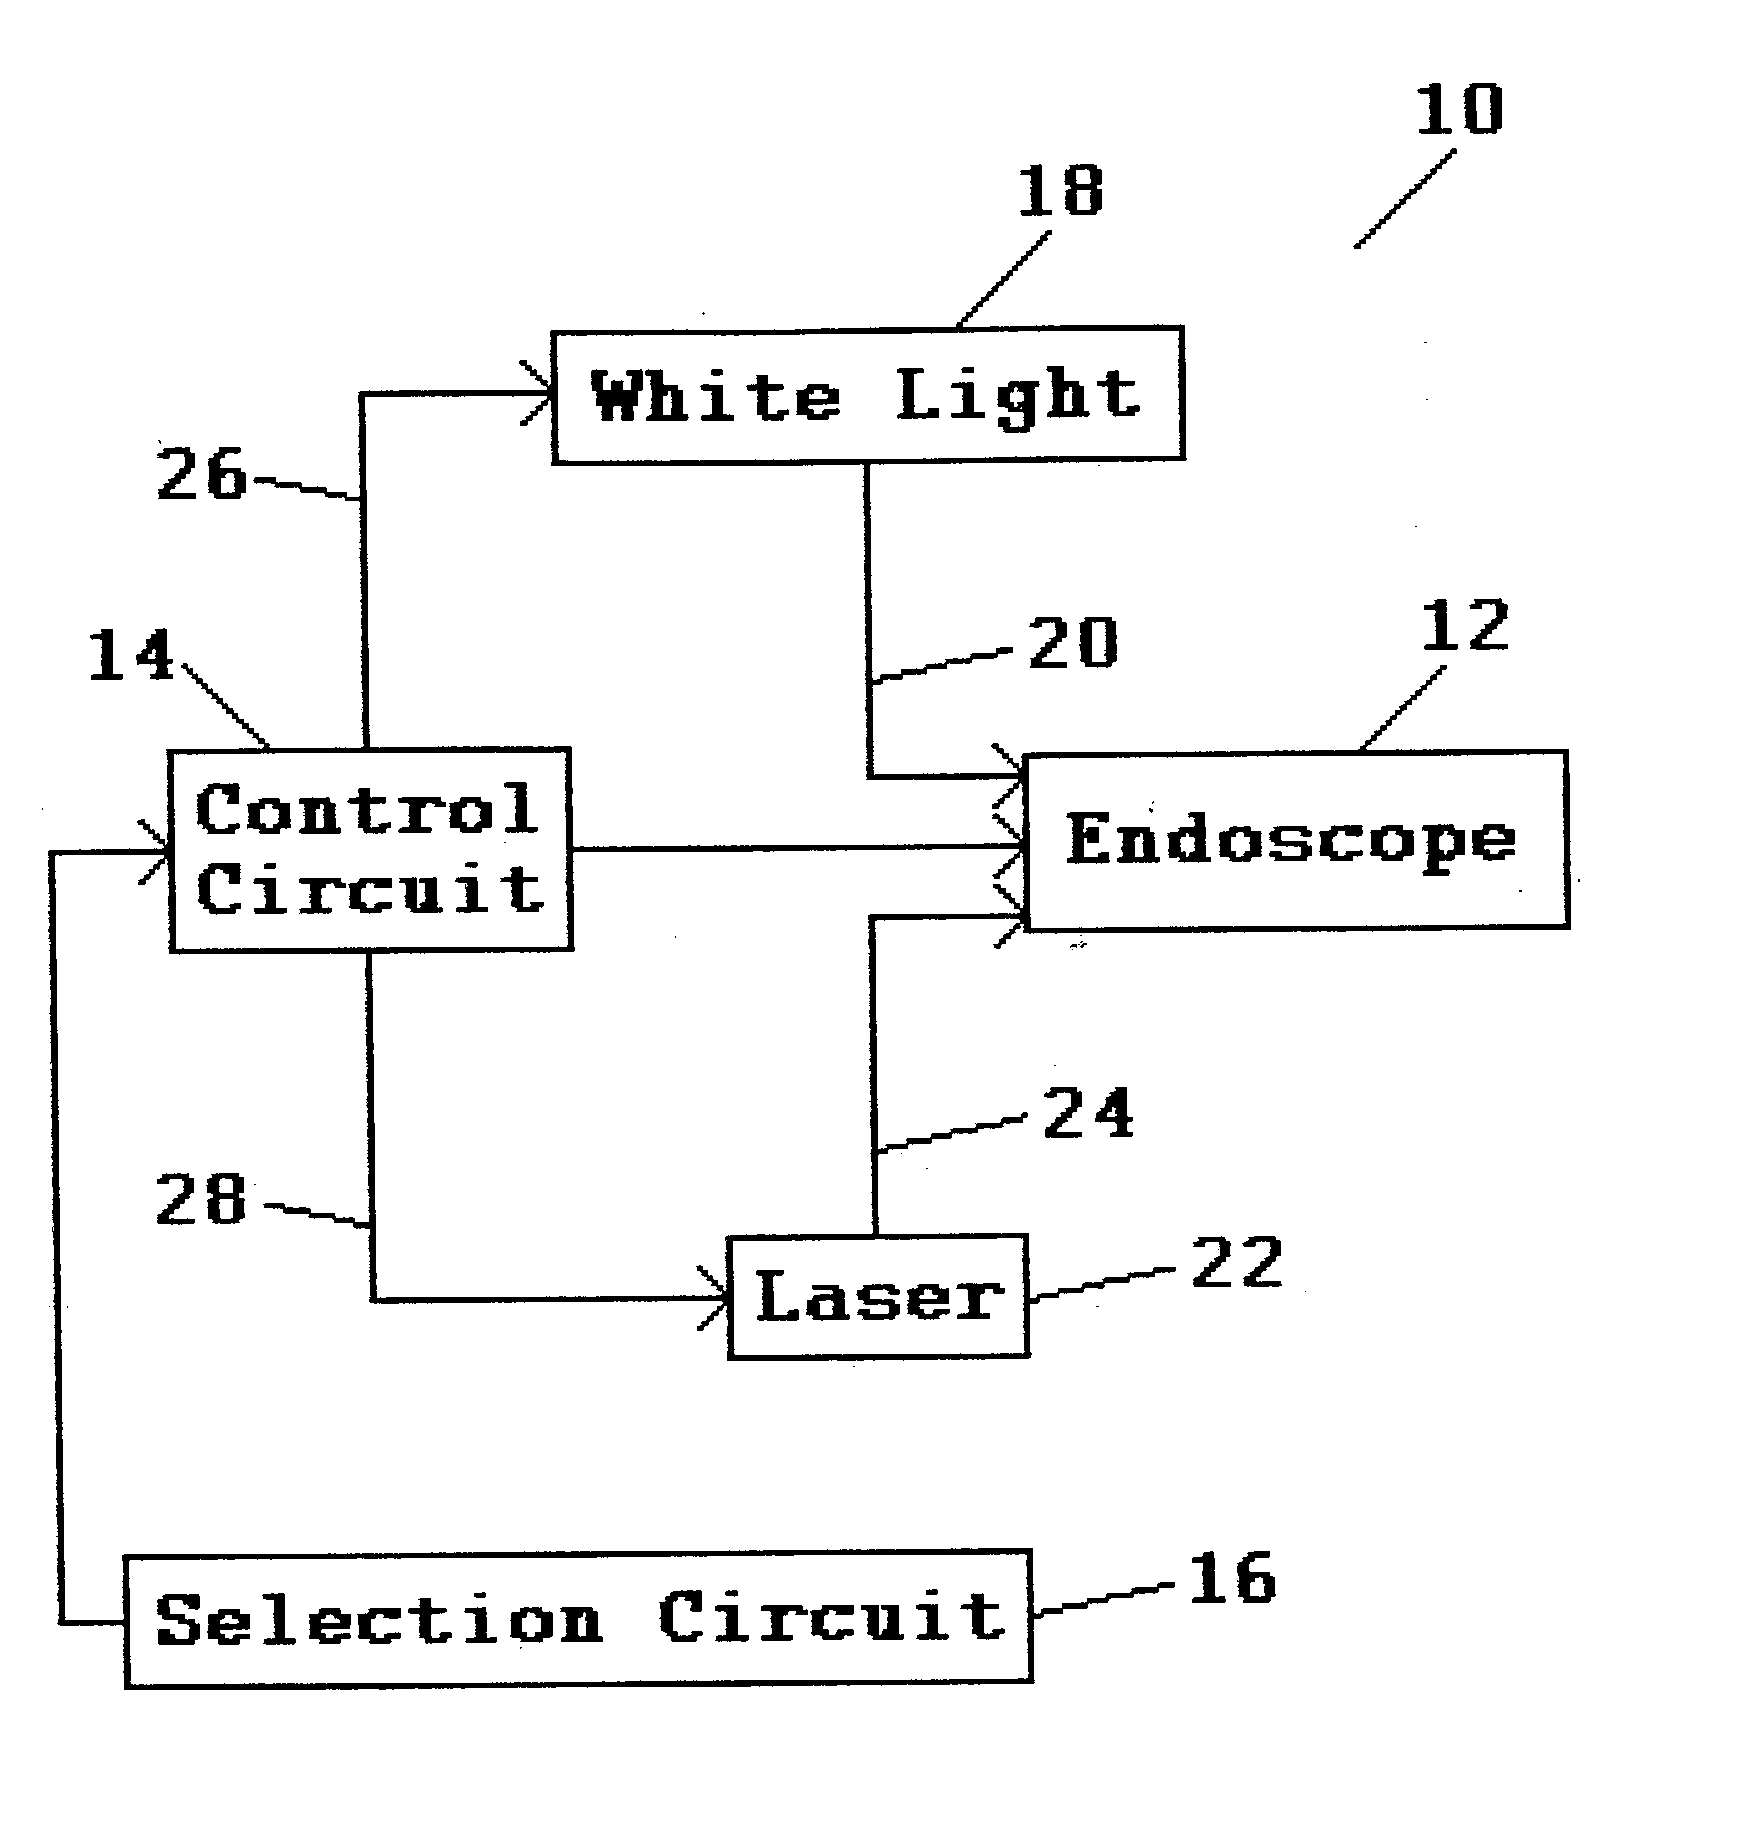 Endoscope illumination system